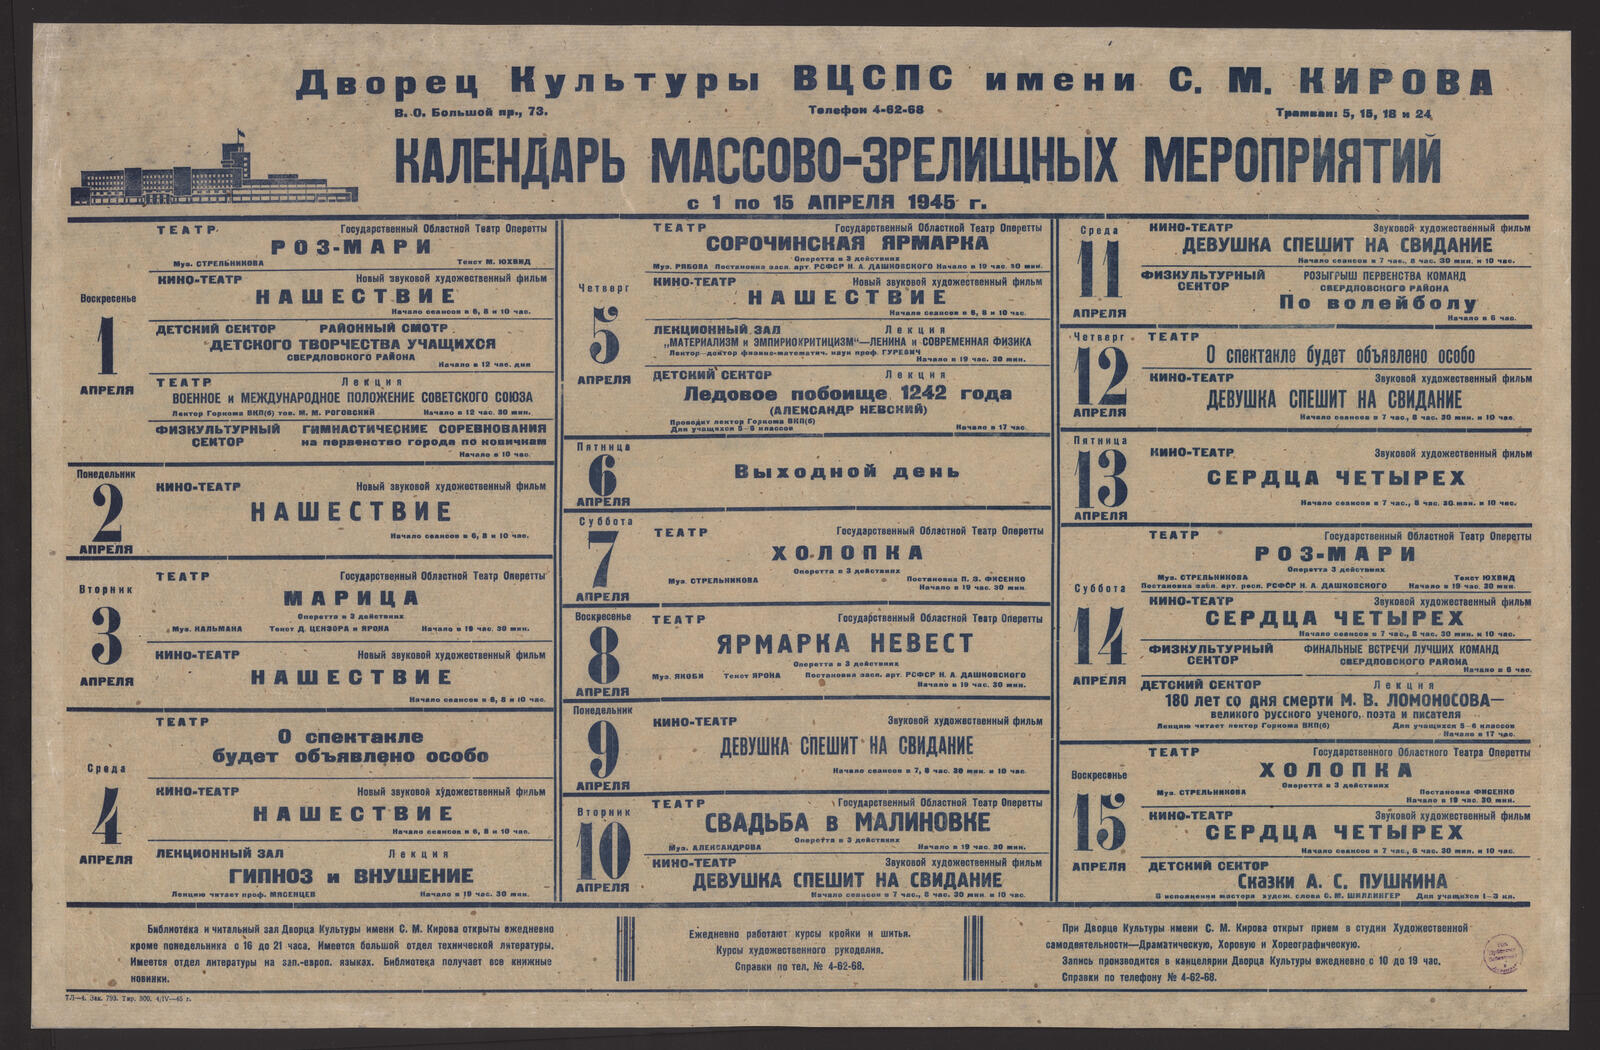 Изображение Календарь массово-зрелищных мероприятий с 1 по 15 апреля 1945 г.